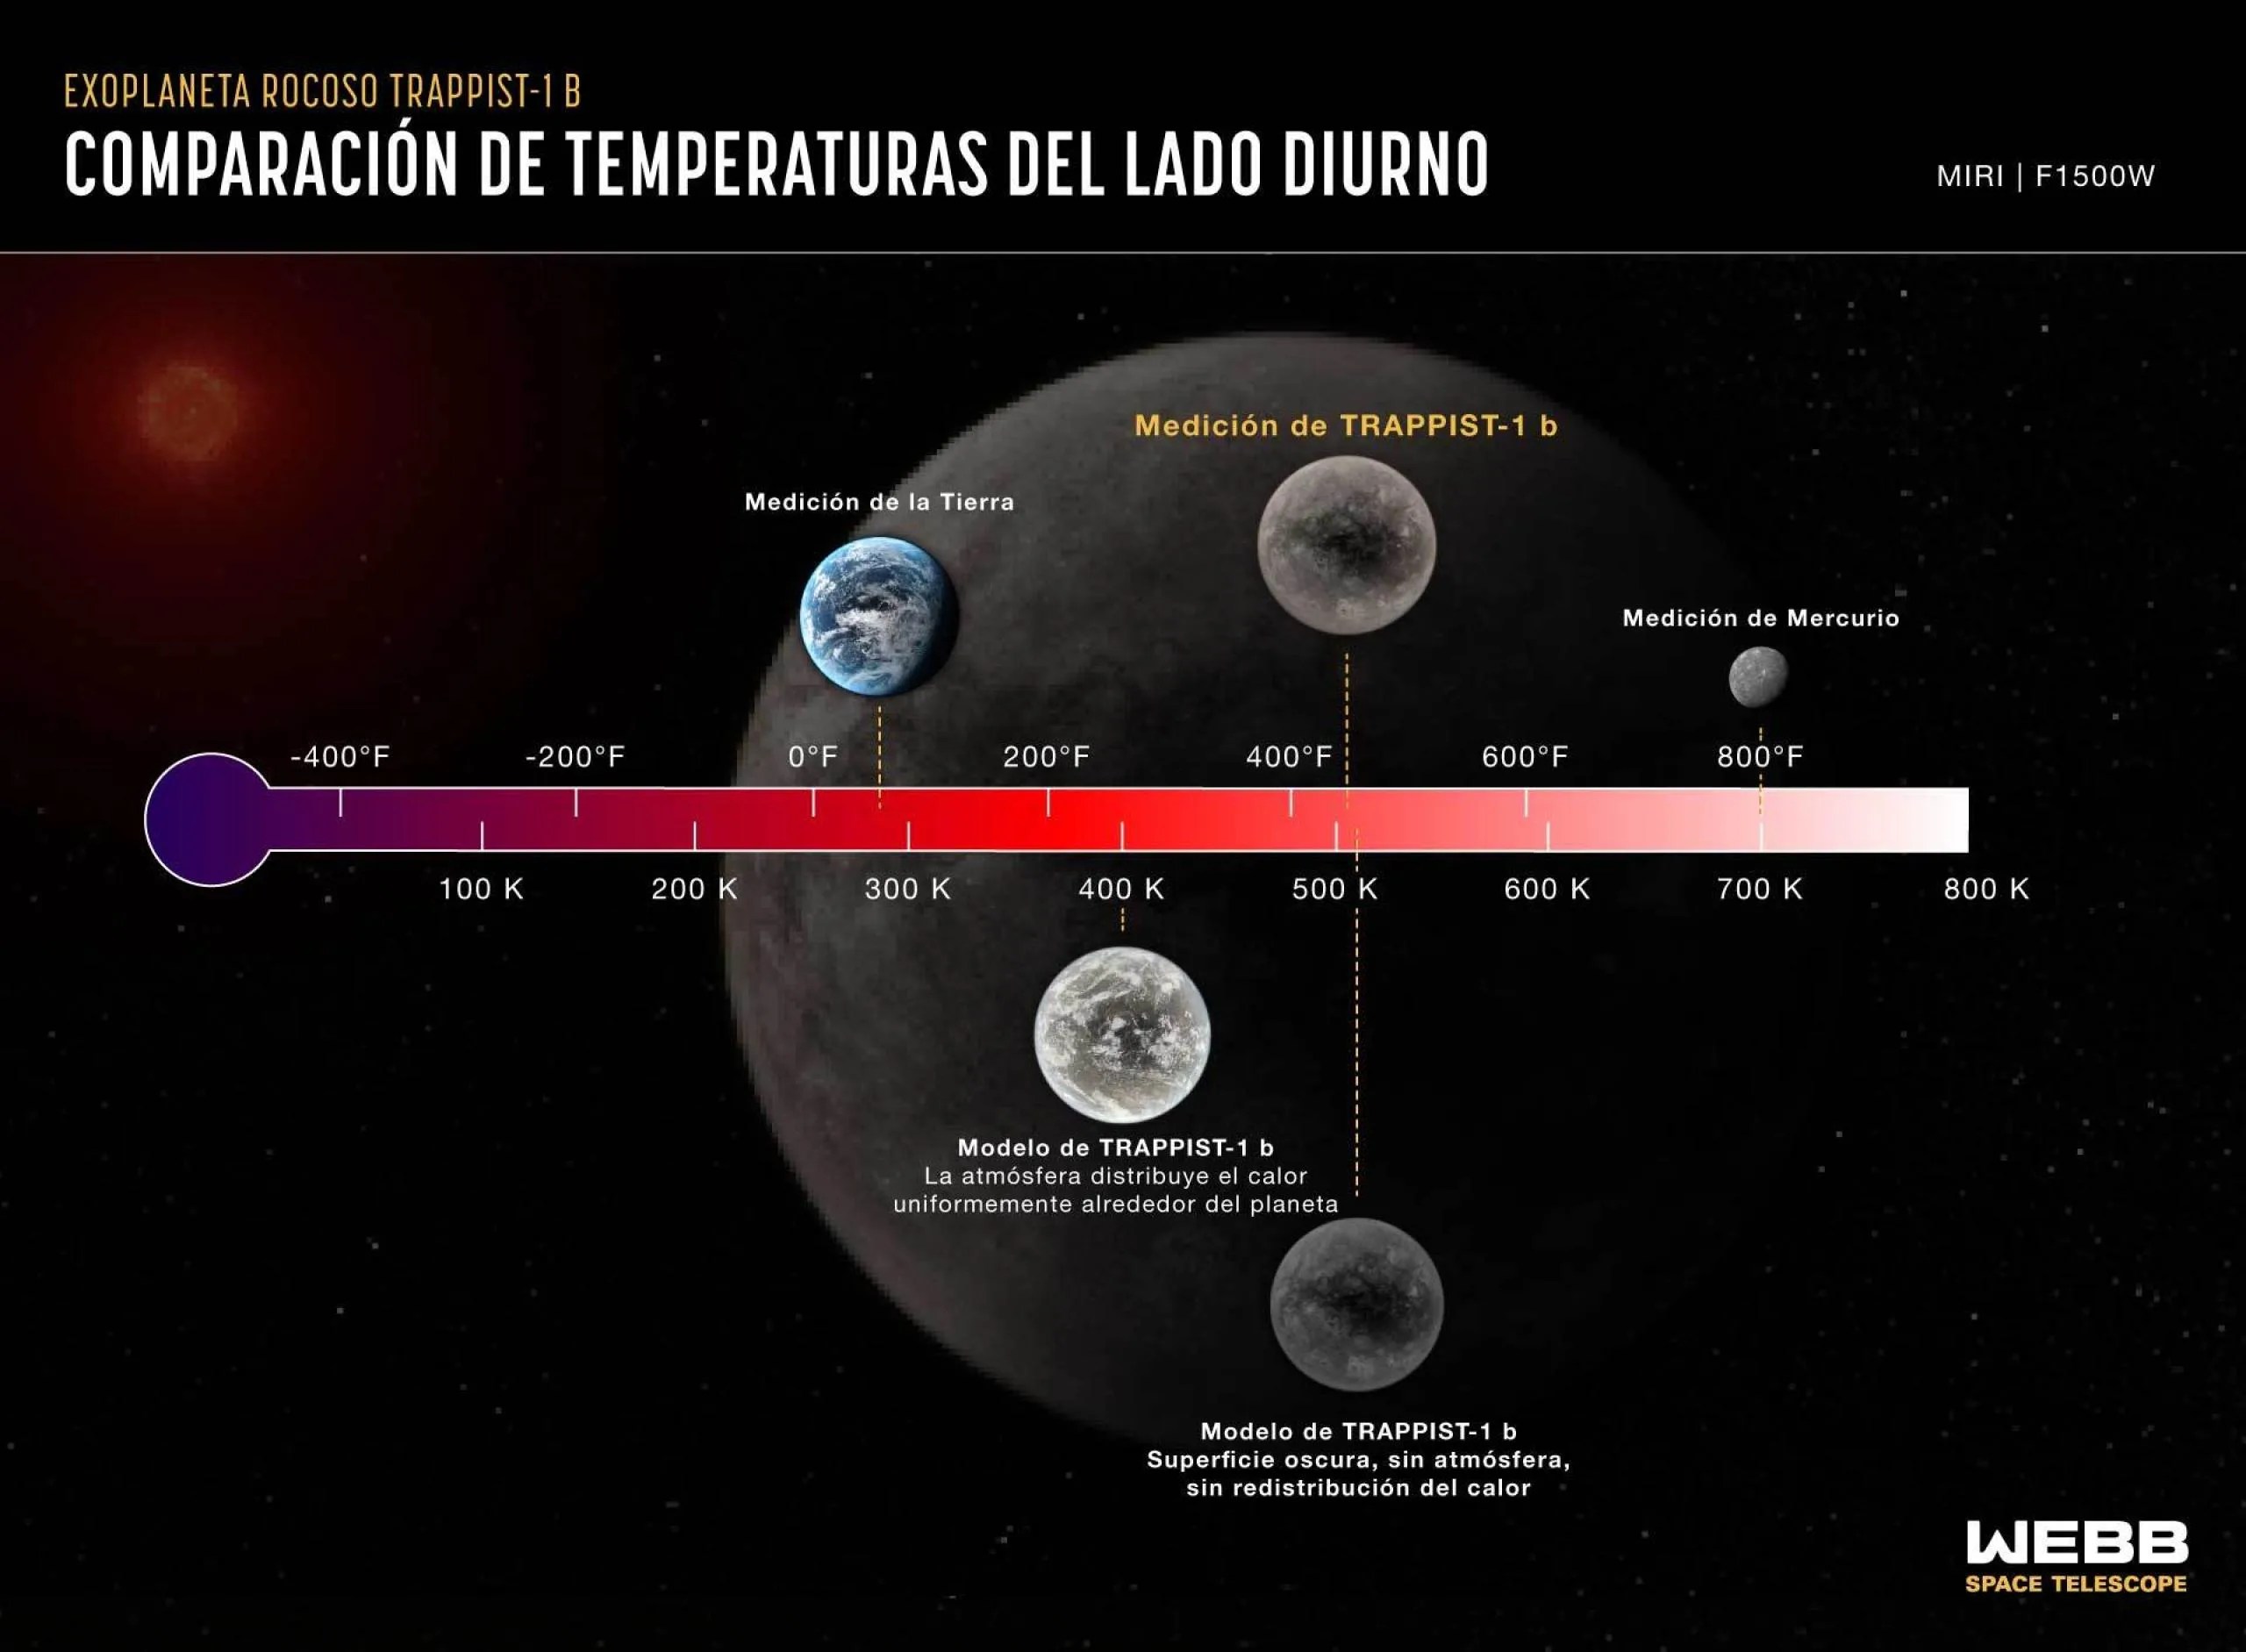 Infografía titulada “Exoplaneta rocoso TRAPPIST-1 b, Comparación de temperatura del lado diurno, MIRI F1500W” que muestra cinco planetas trazados a lo largo de una escala de temperatura horizontal: la Tierra, TRAPPIST-1 b, Mercurio y dos modelos diferentes de TRAPPIST-1 b.